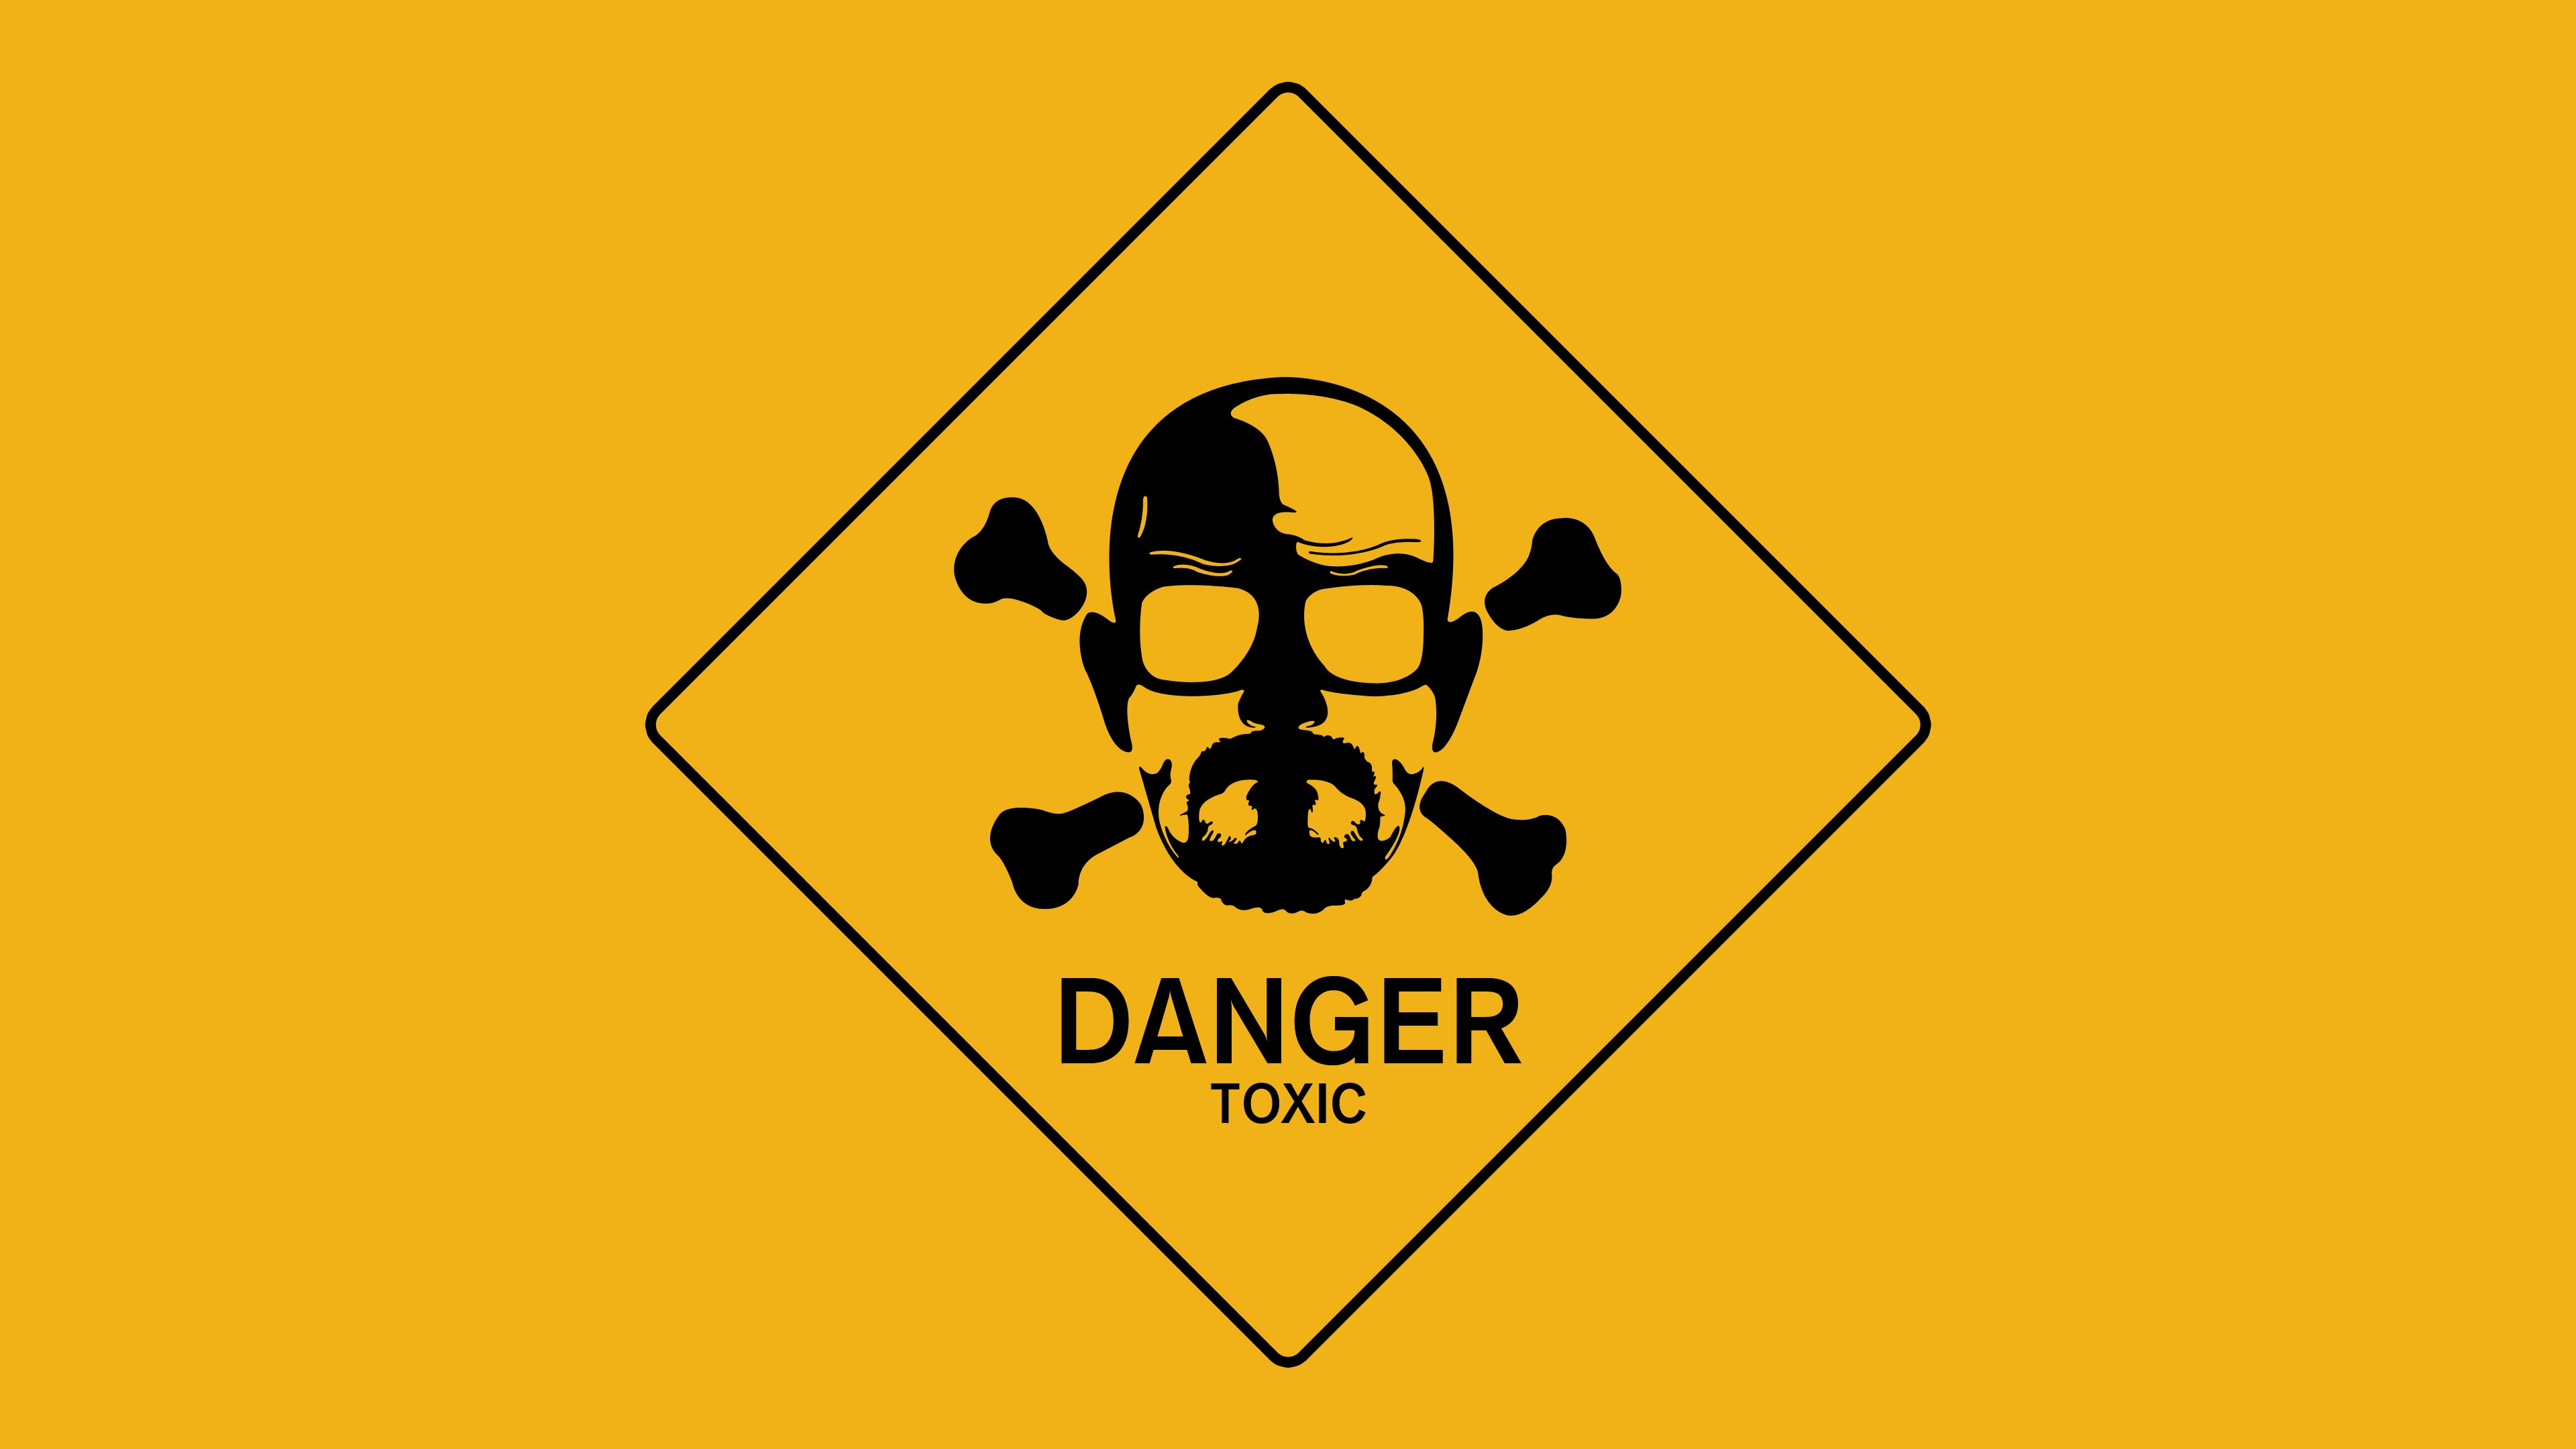 Danger 4K wallpaper for your desktop